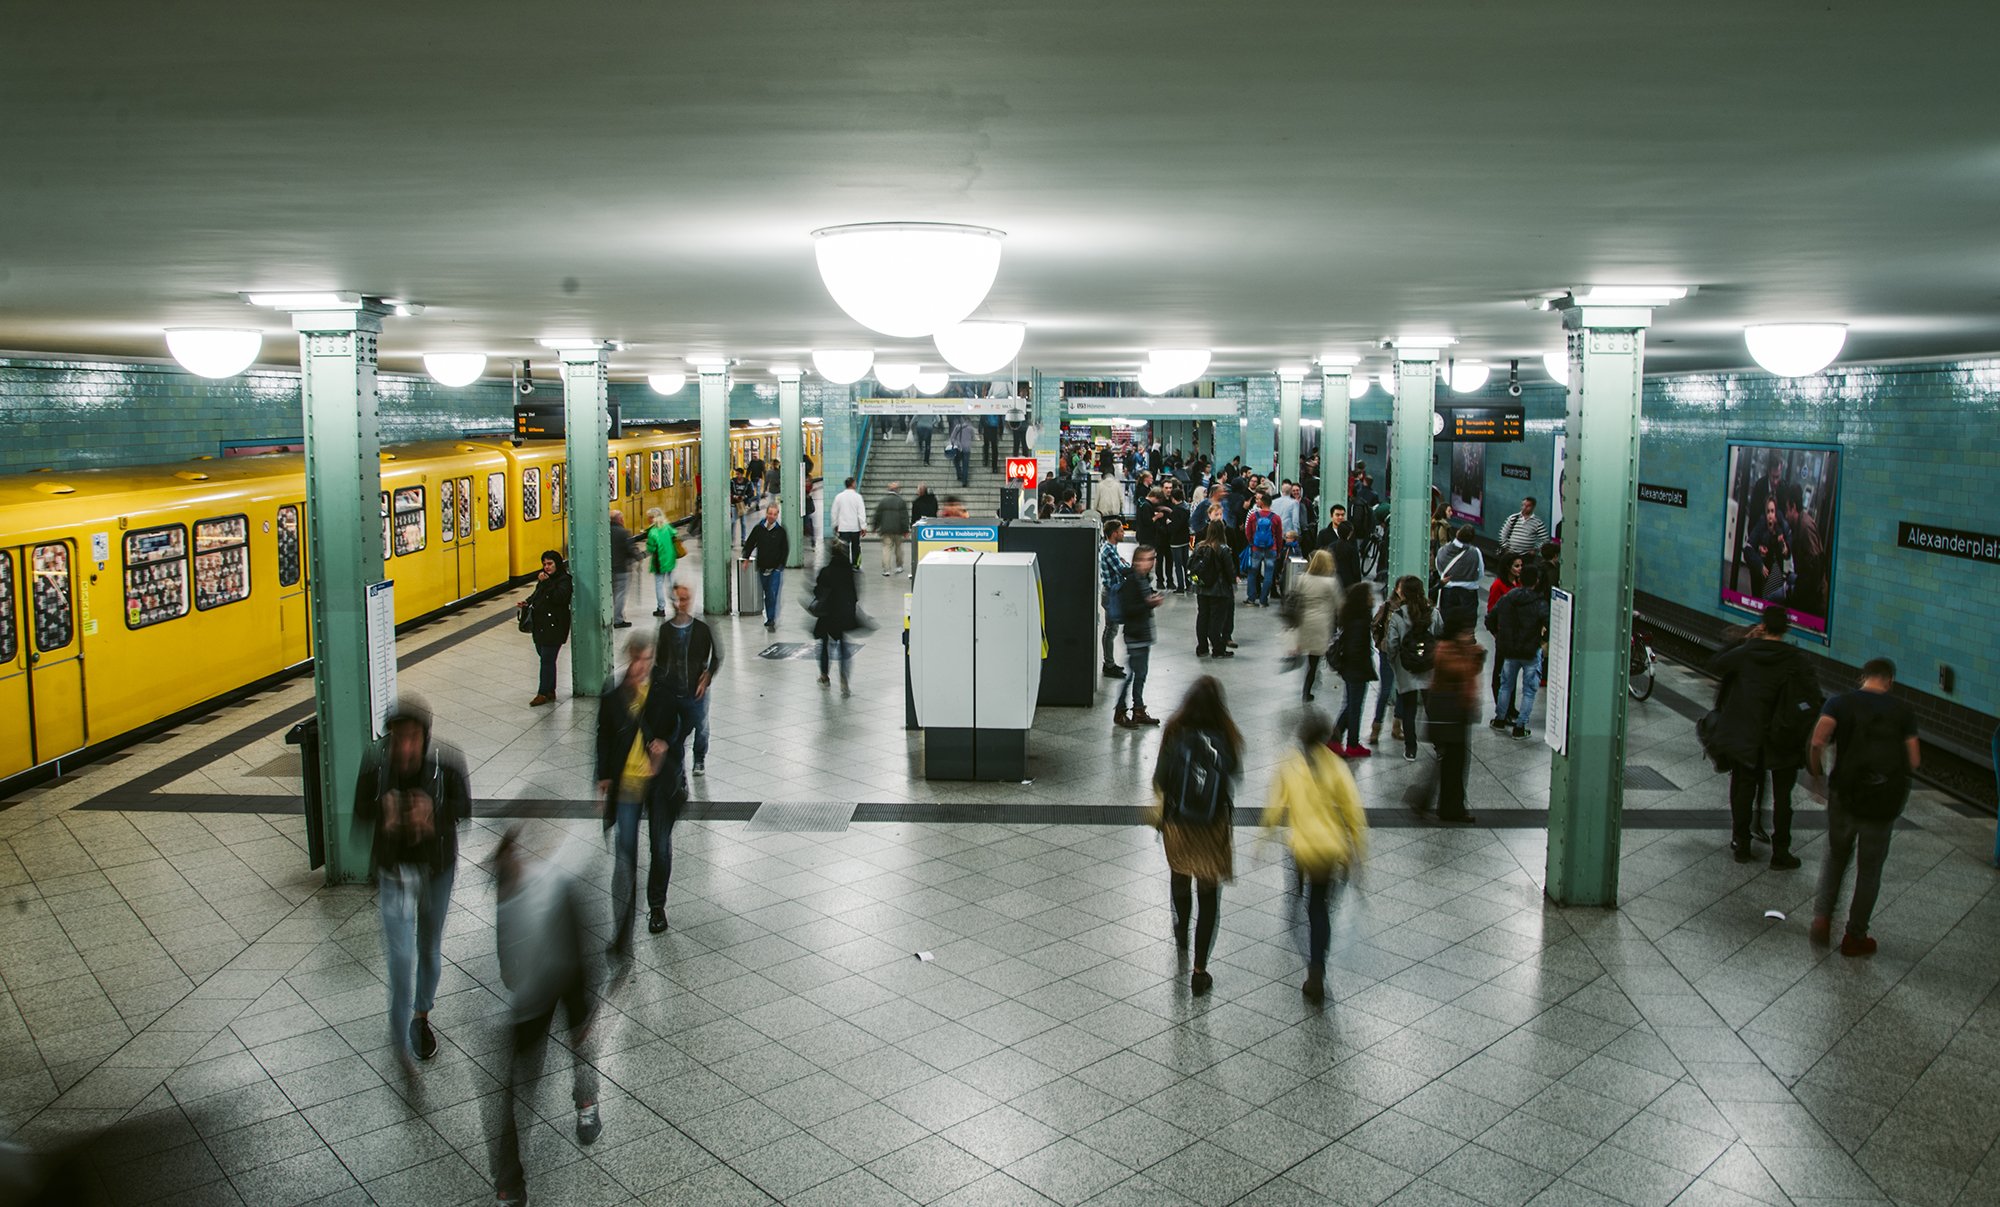 Höchstgrenze bei Entfernungspauschale: Foto einer U-Bahn-Station